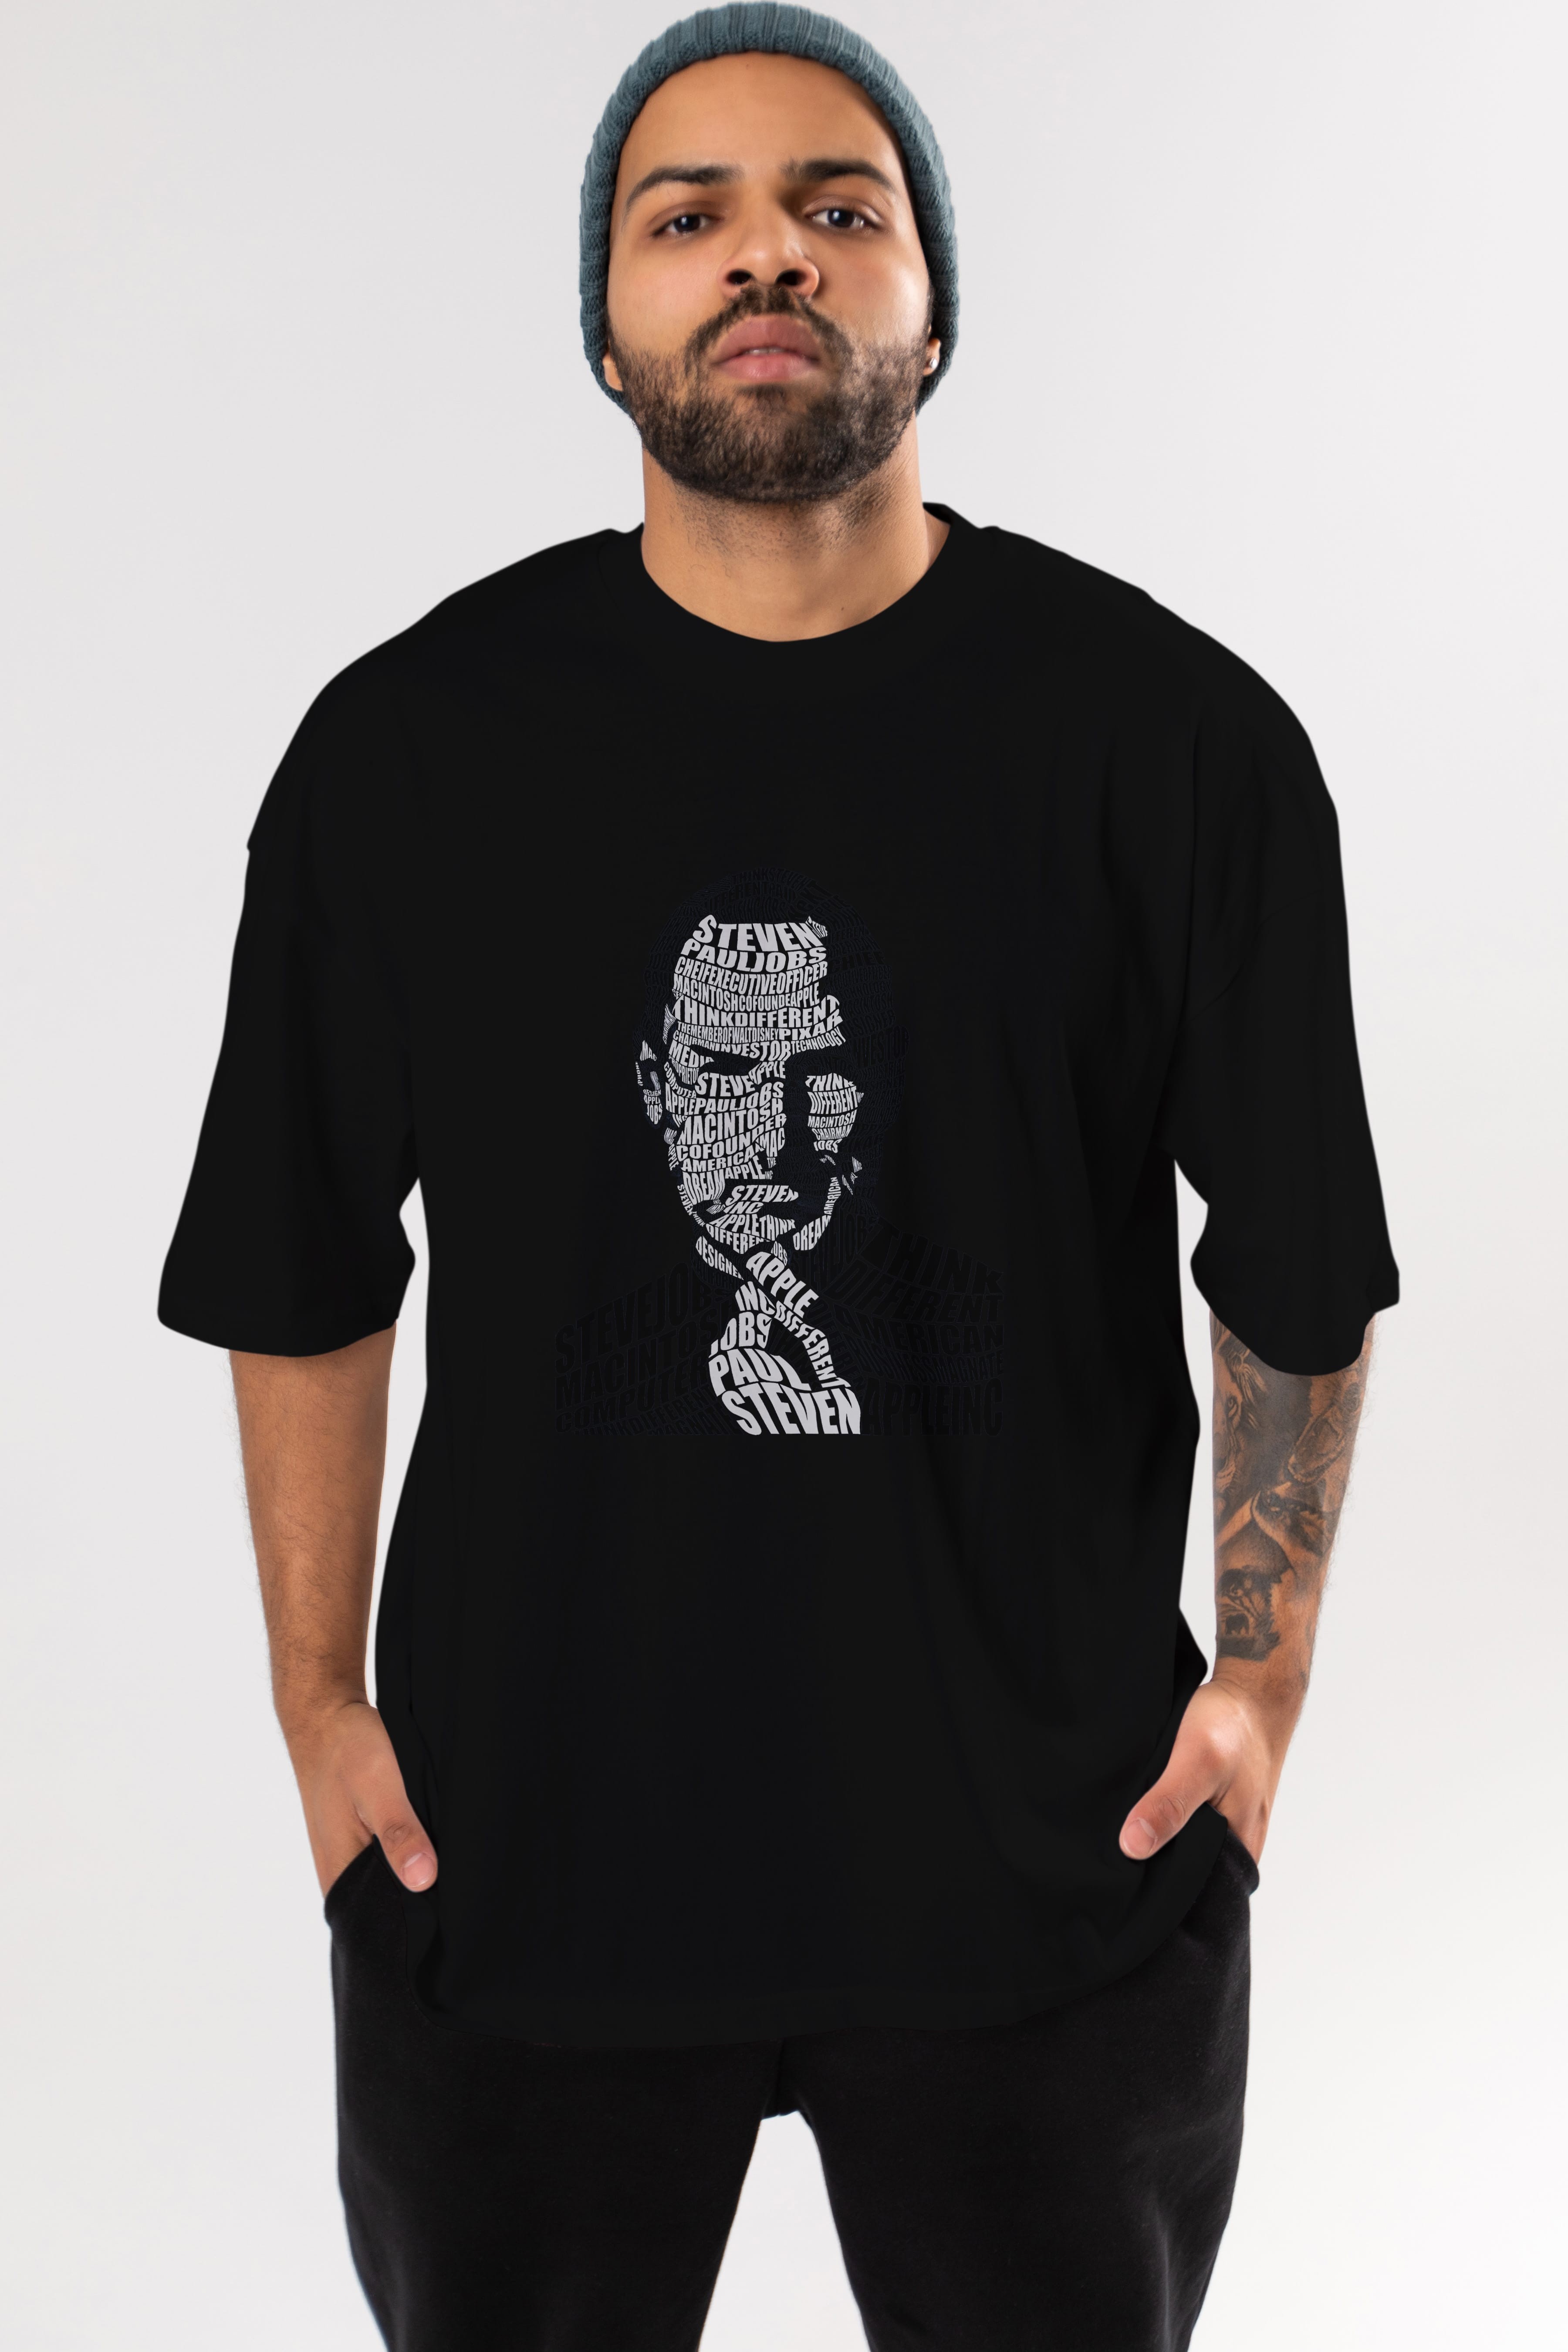 Steve Jobs Calligram Ön Baskılı Oversize t-shirt %100 pamuk Erkek Kadın Unisex